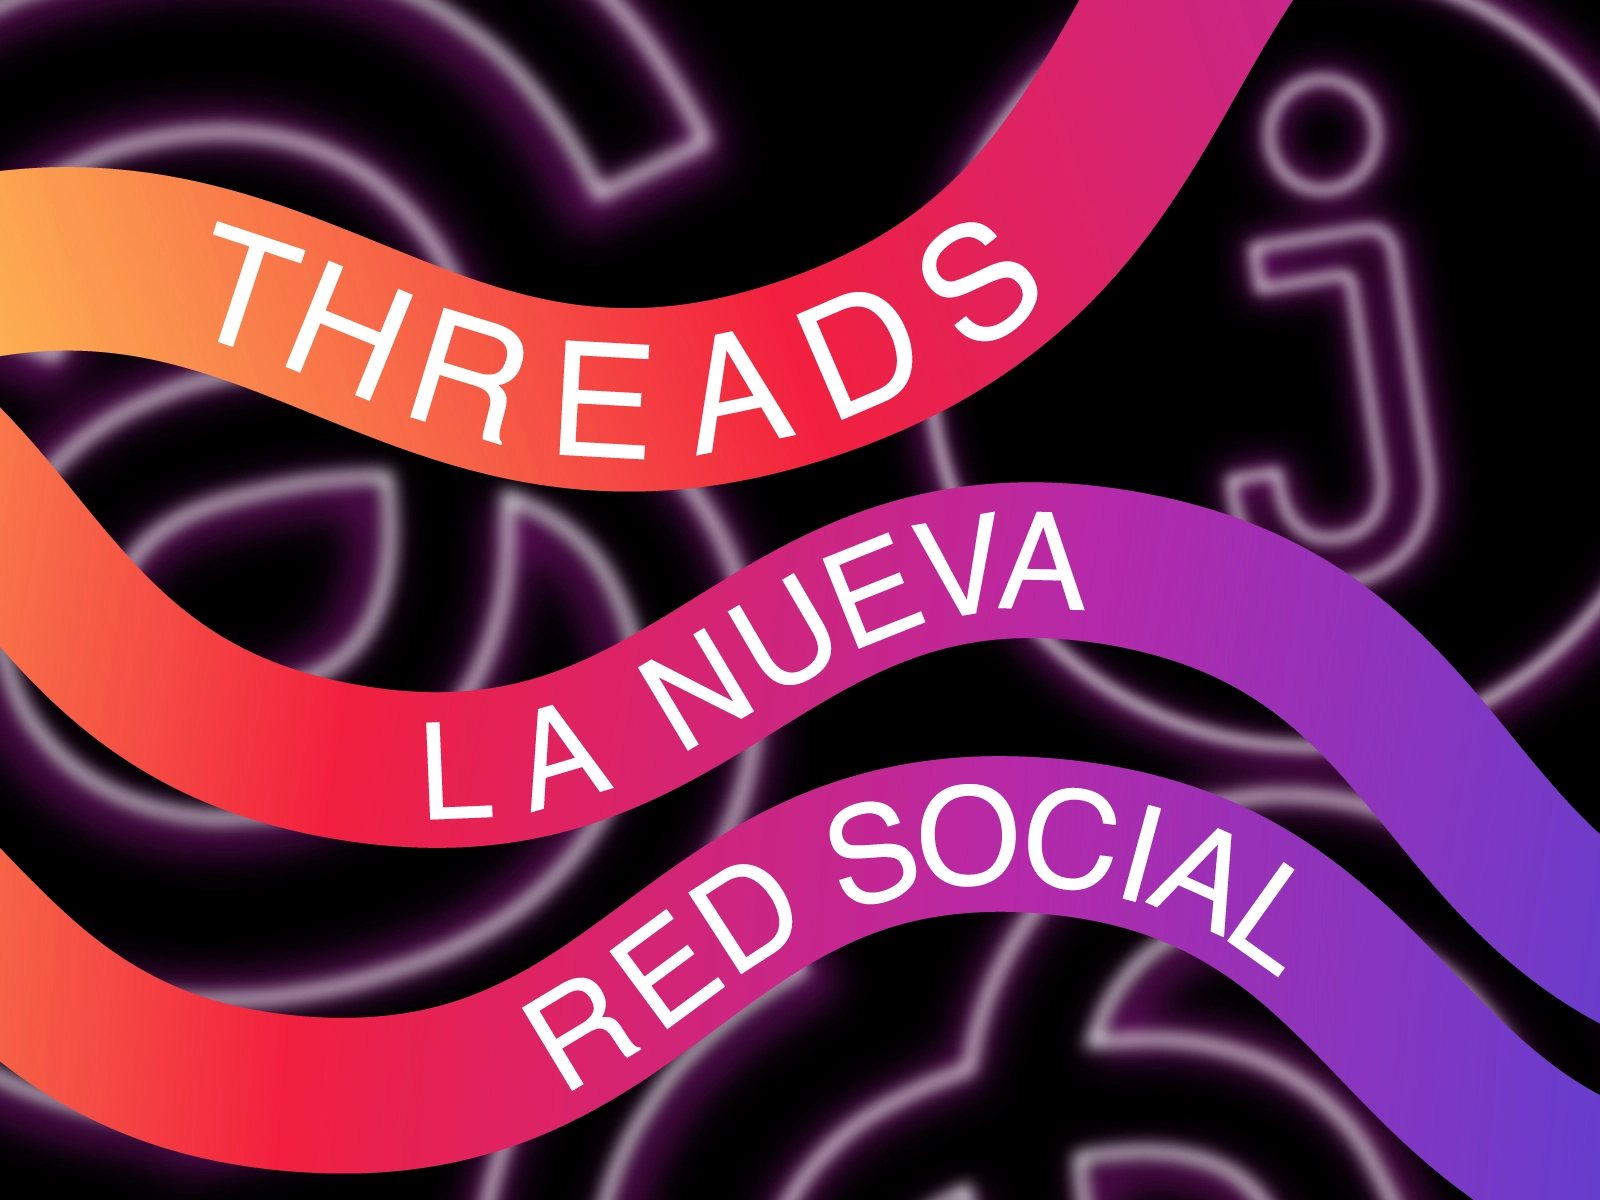 Threads, la nueva red social